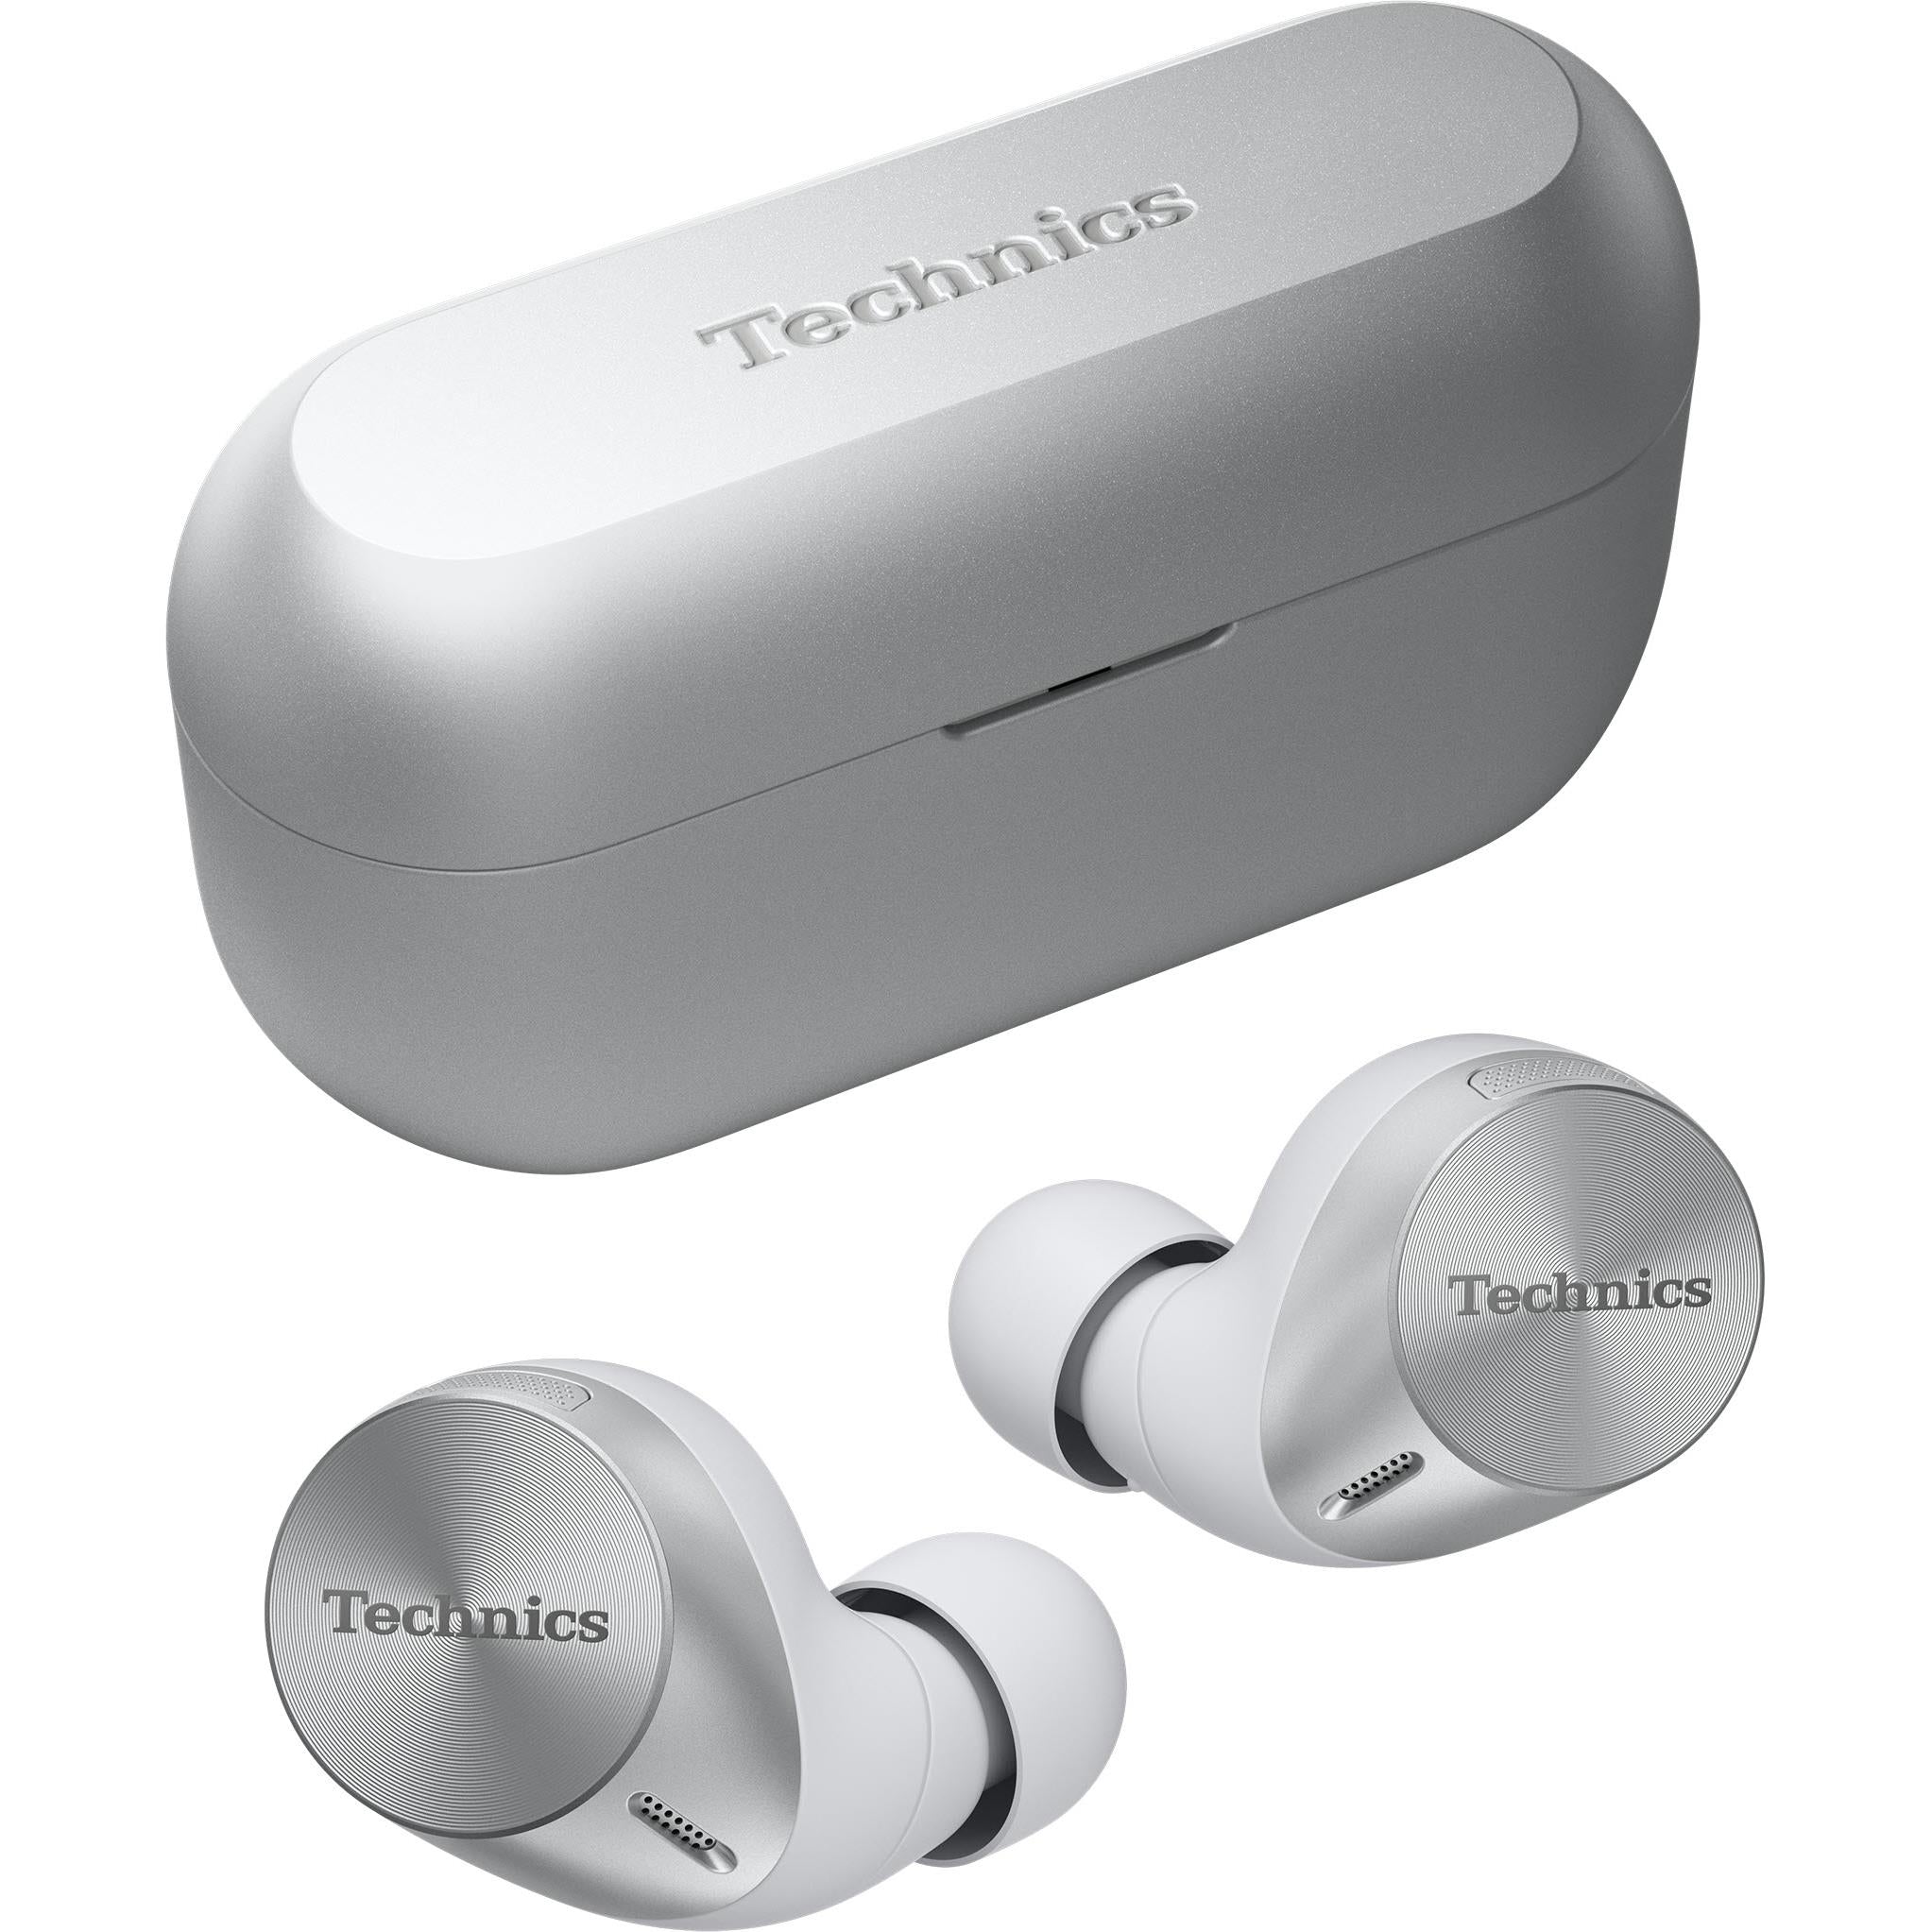 Technics AZ60M2 True Wireless Noise Cancelling In-Ear Headphones